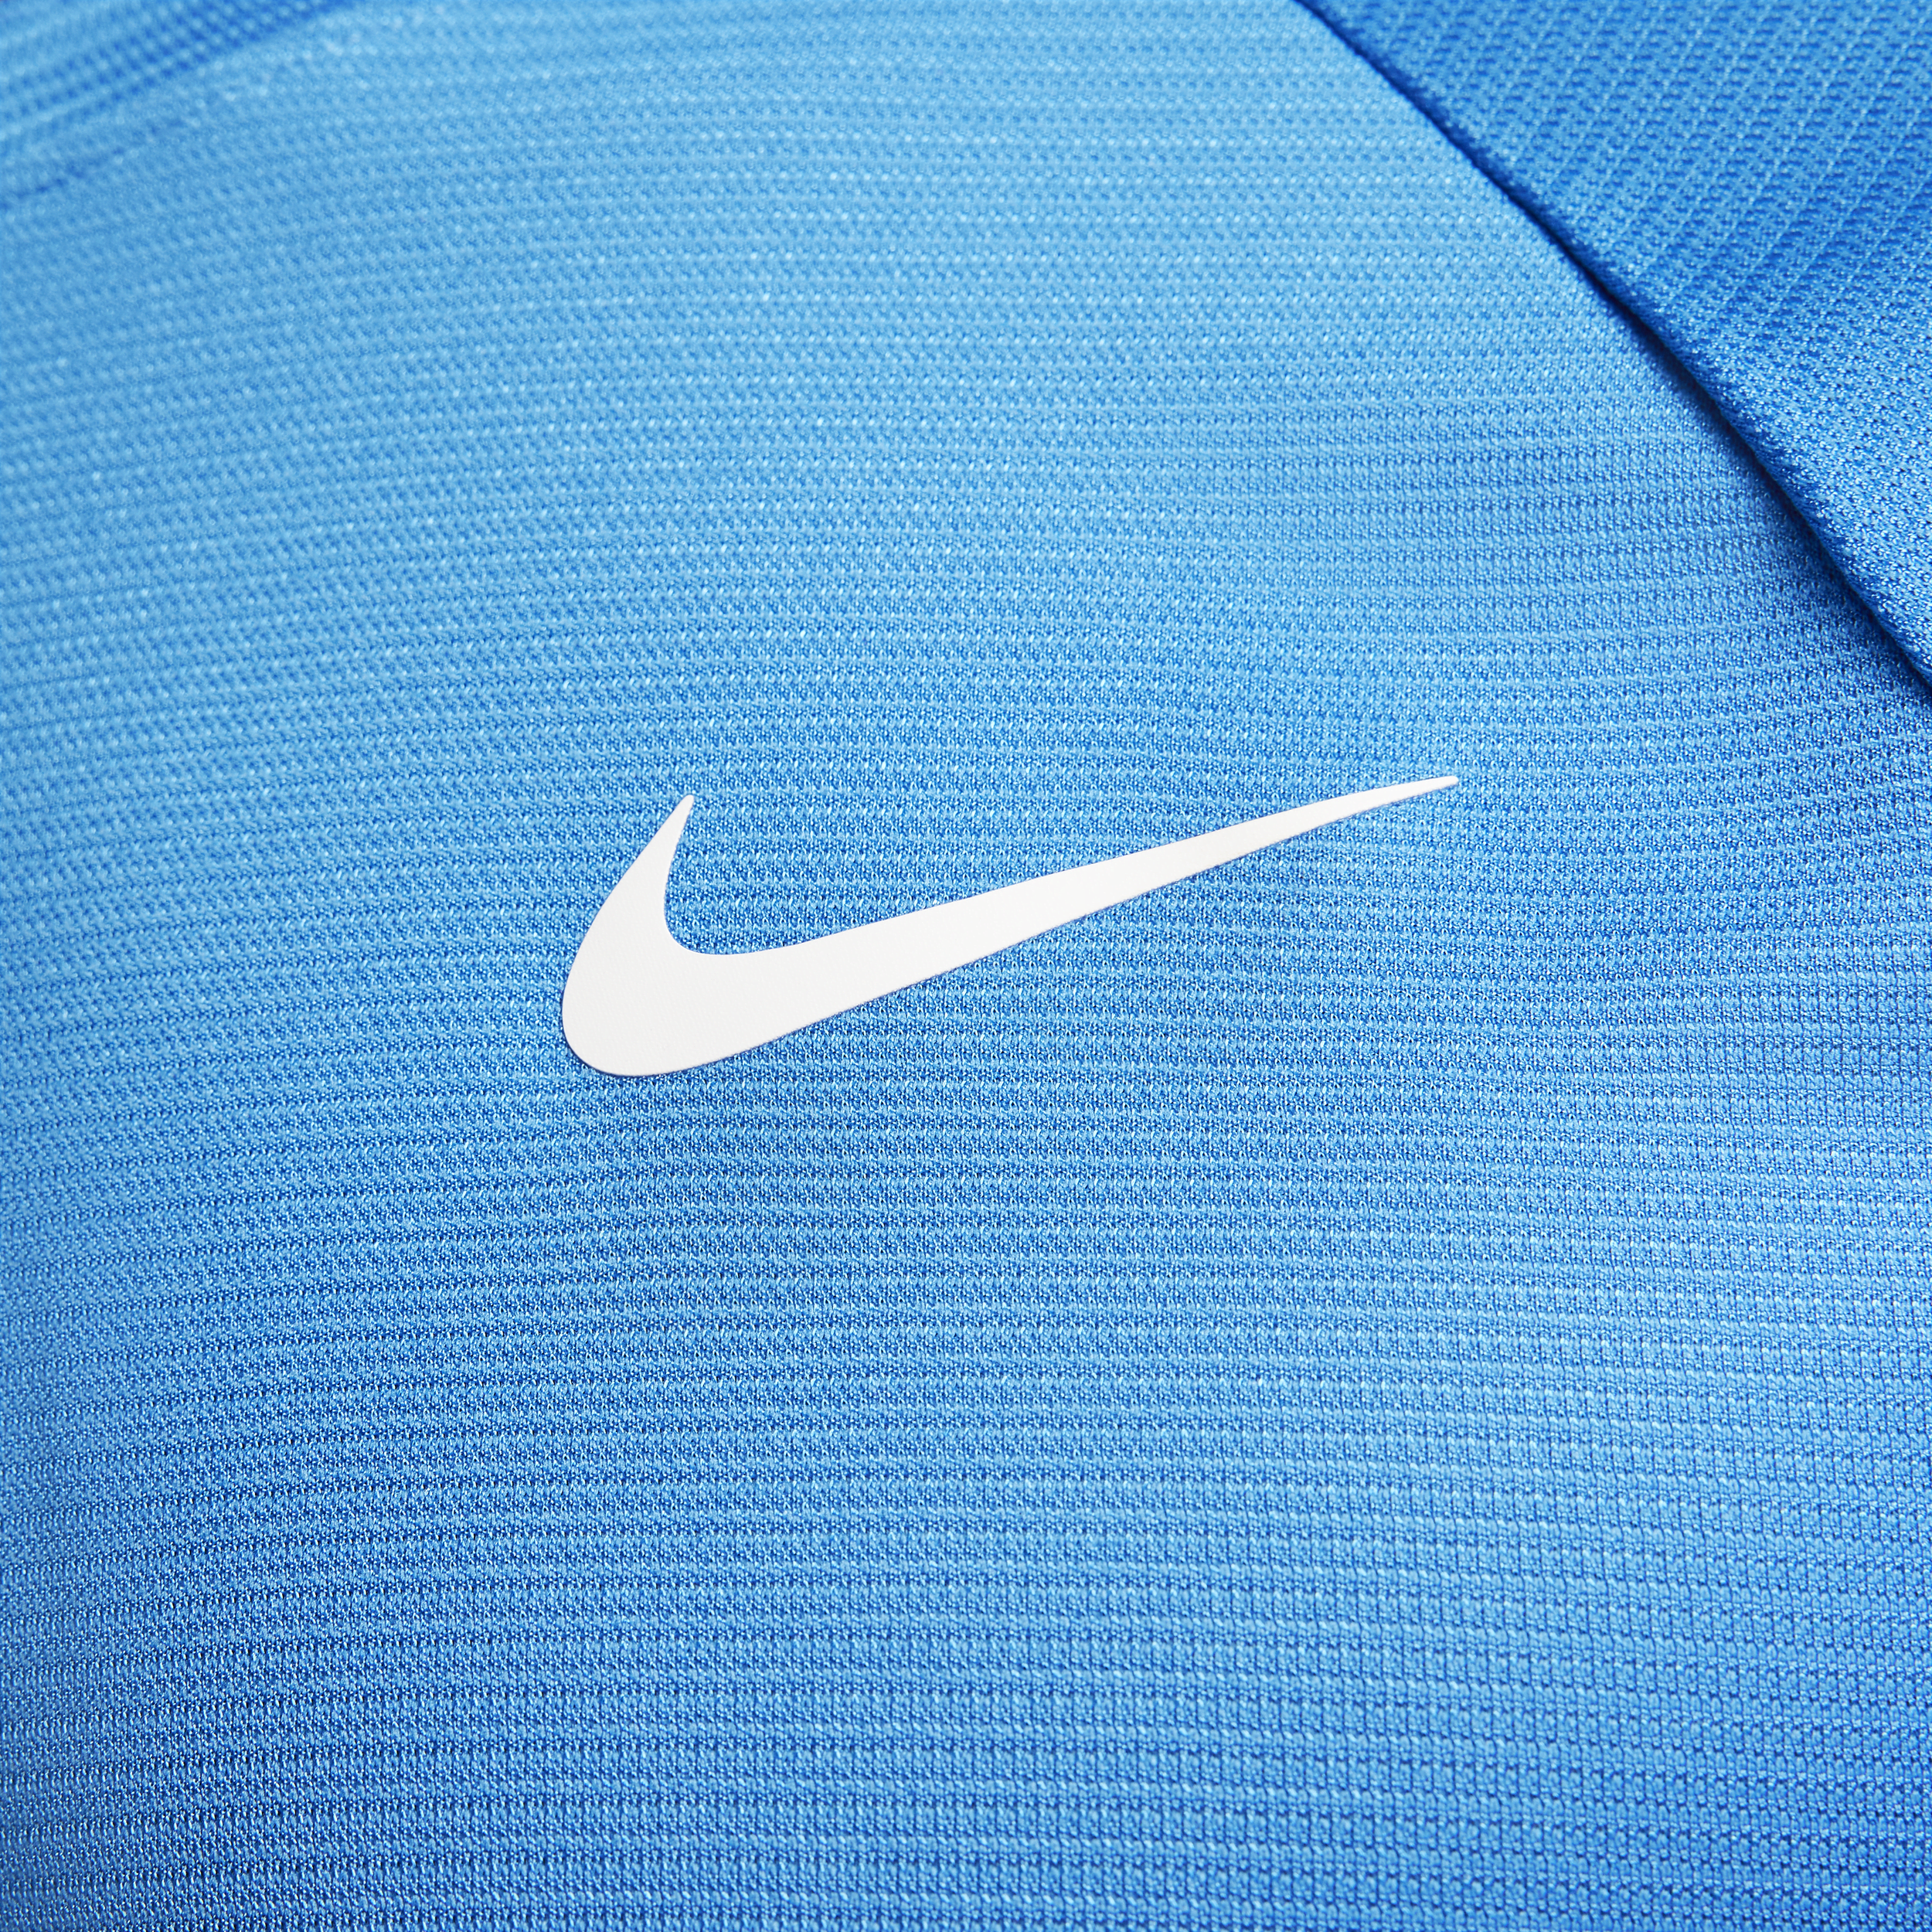 Nike Rafa Challenger Dri-FIT tennistop met korte mouwen voor heren Blauw